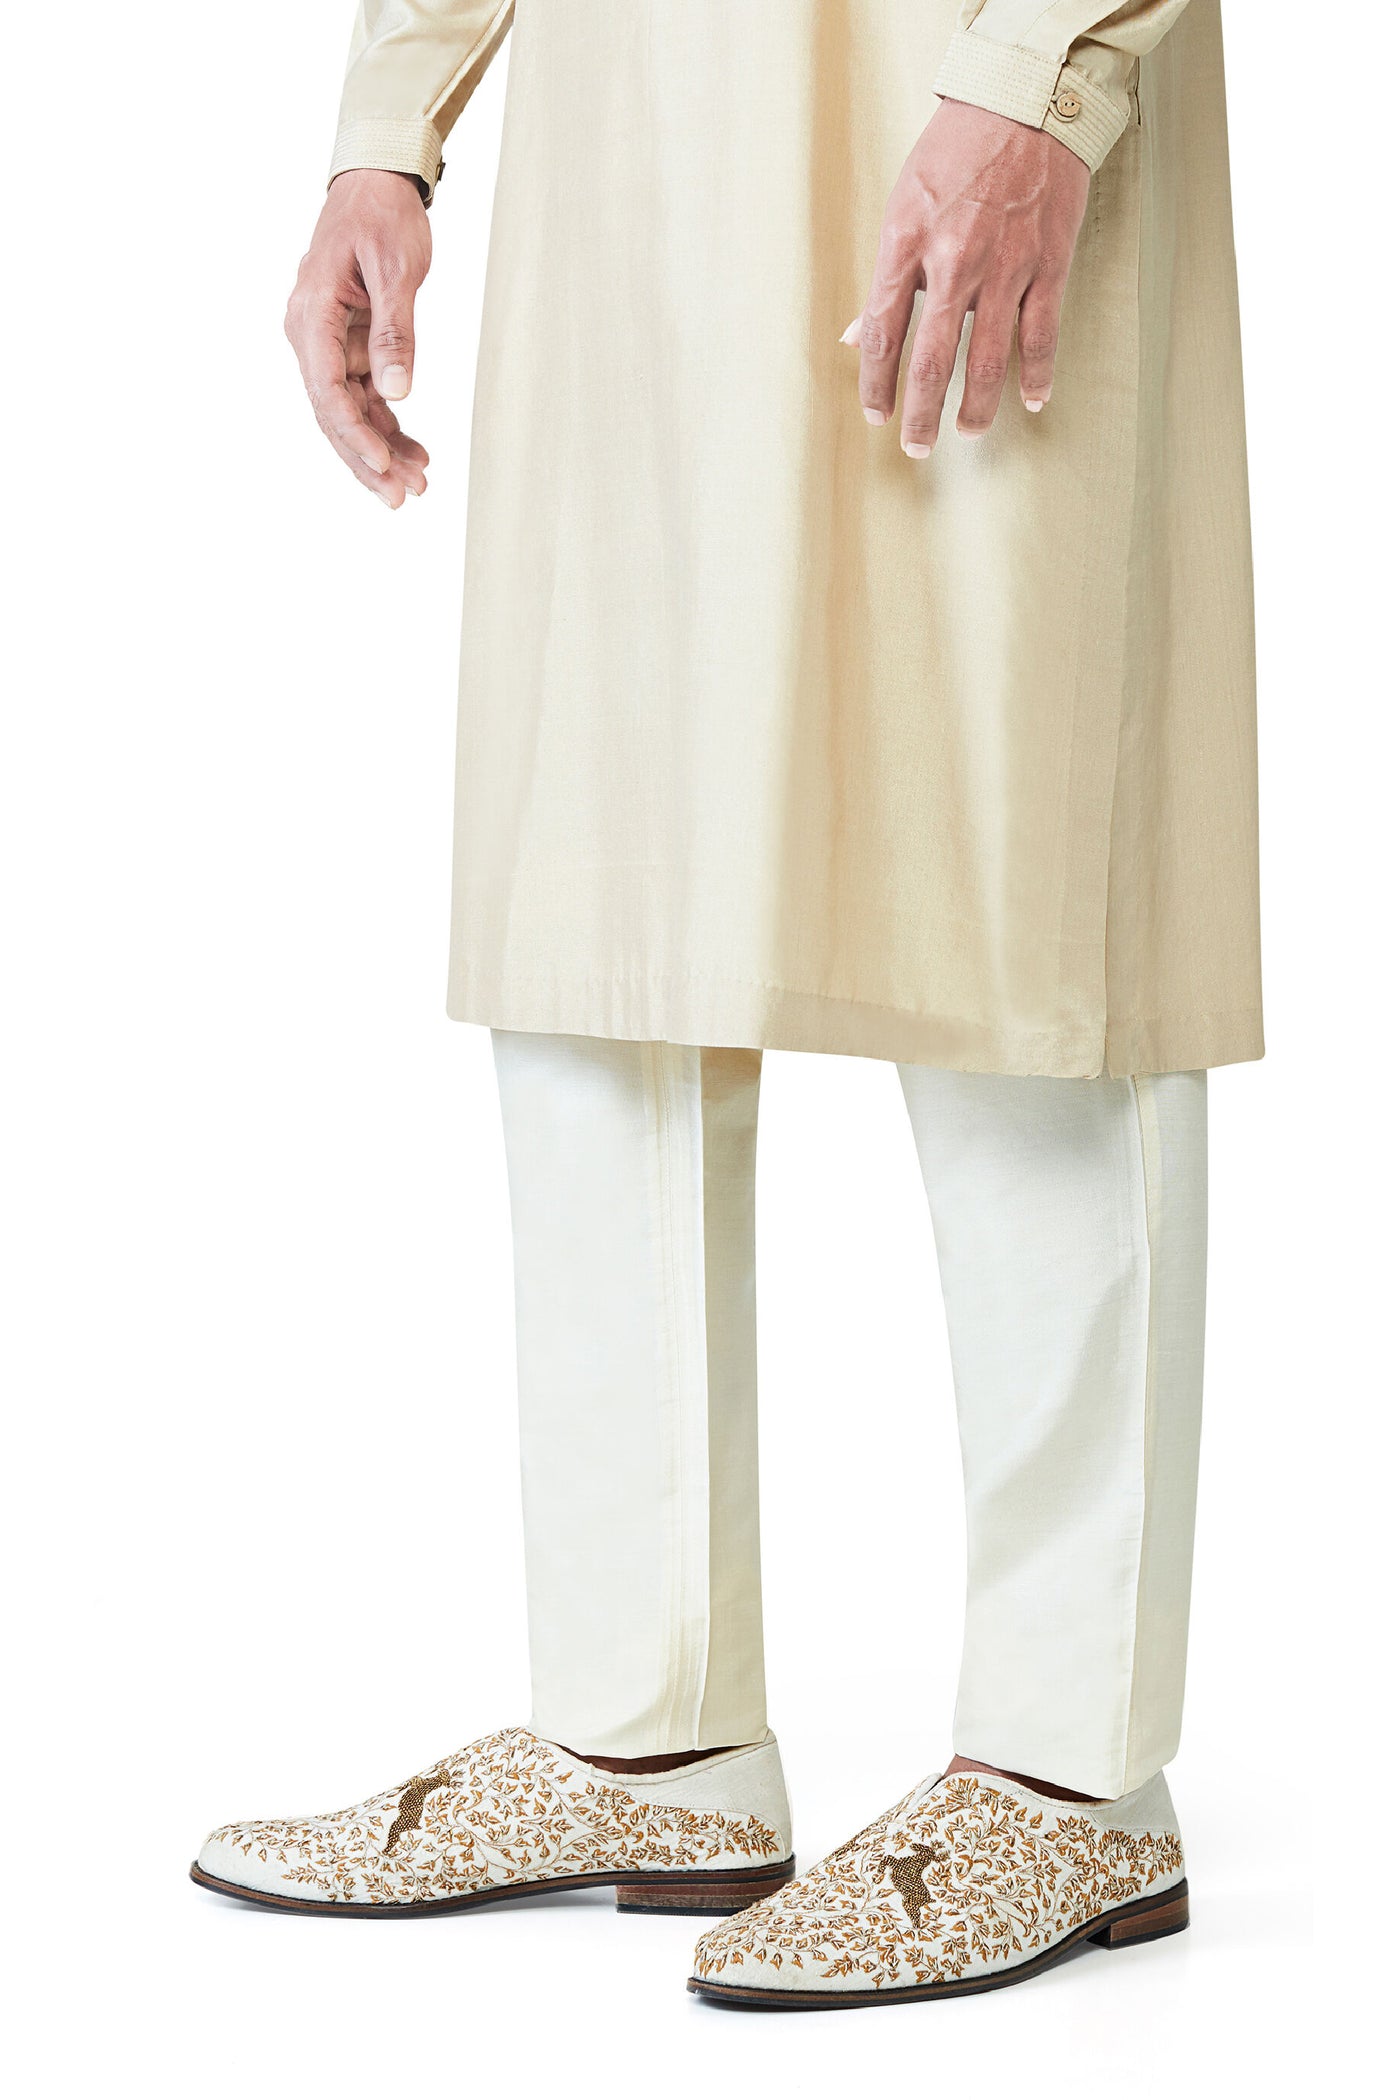 Anita Dongre Silk Trouser Cream Indian designer wear online shopping melange singapore